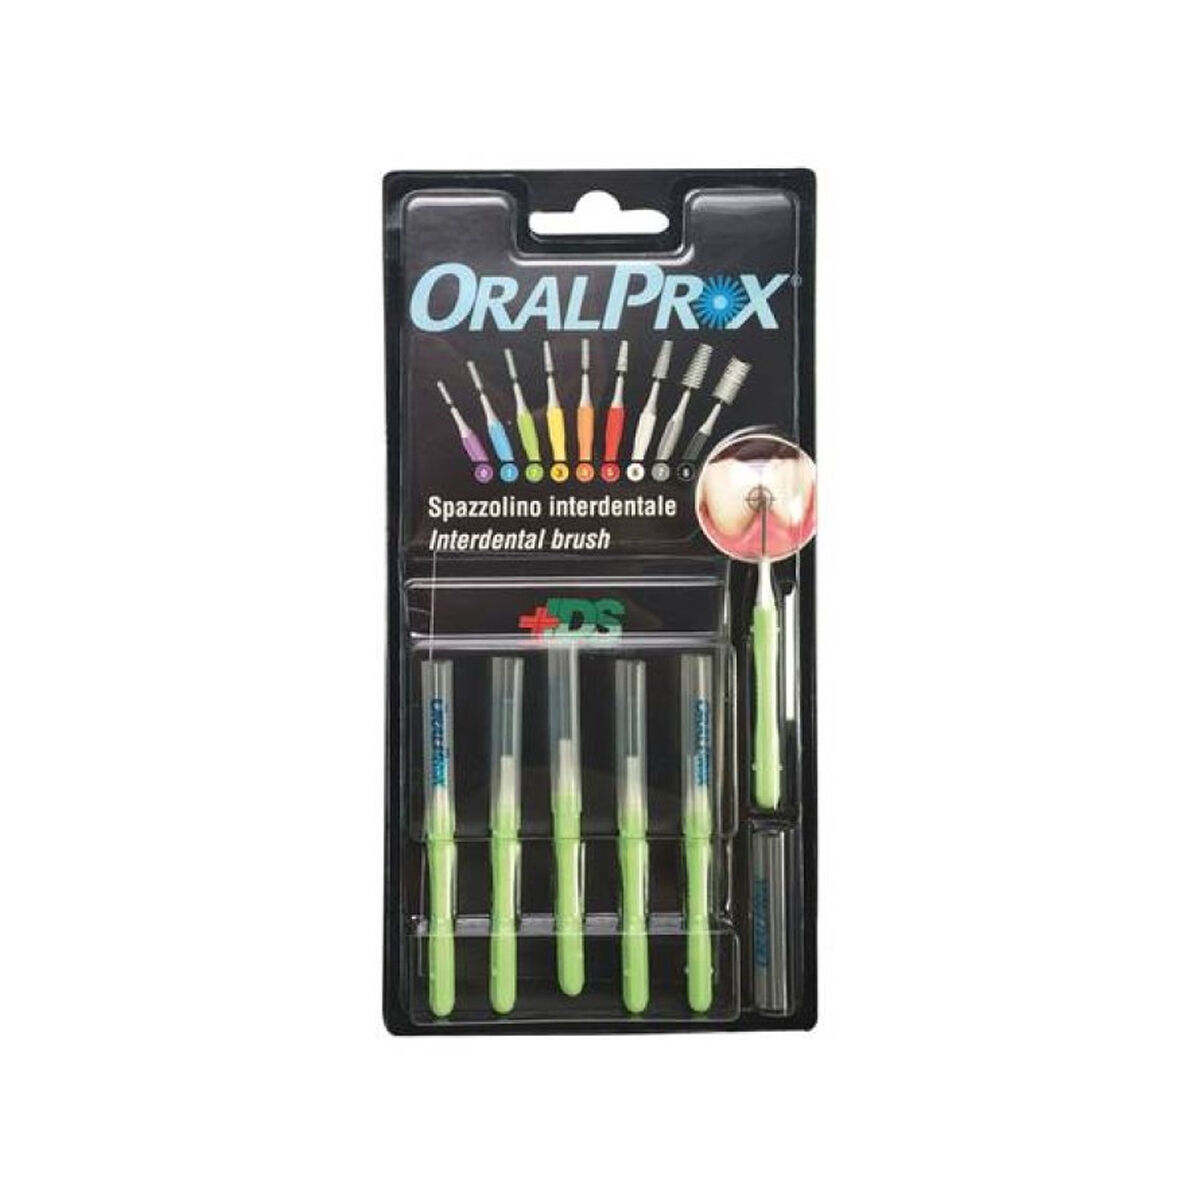 oralprox spazzolini interdentali misura 2 verde 6 pezzi